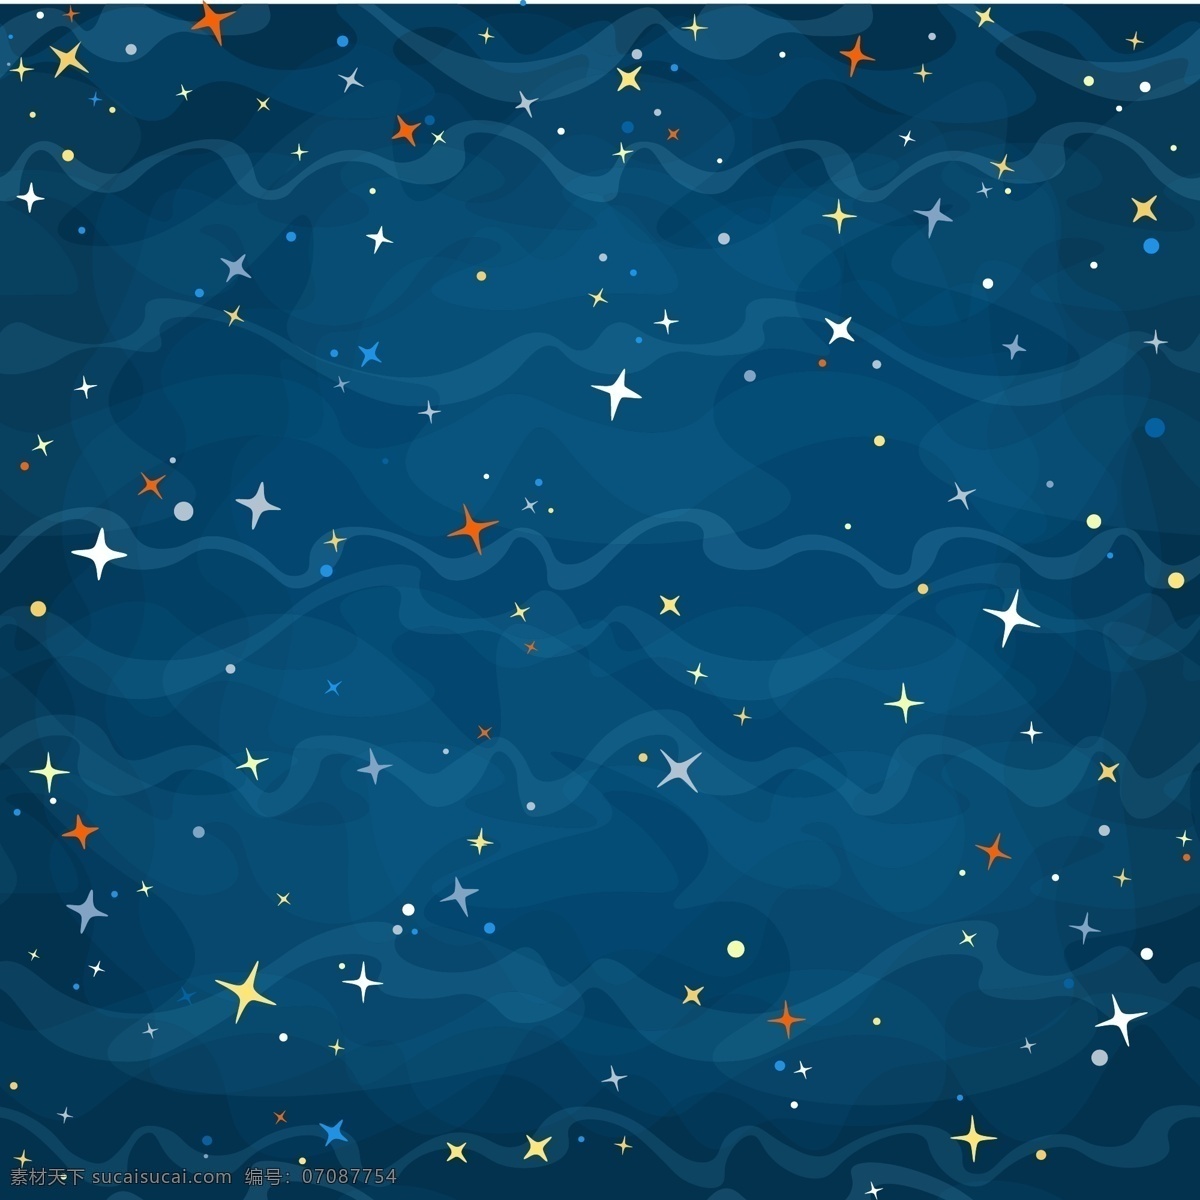 卡通 背景 明星 图案 抽象 纹理 灯光 蓝色 天空 壁纸 科学 空间 艺术 色彩 黄色 银河 夜晚 绘画